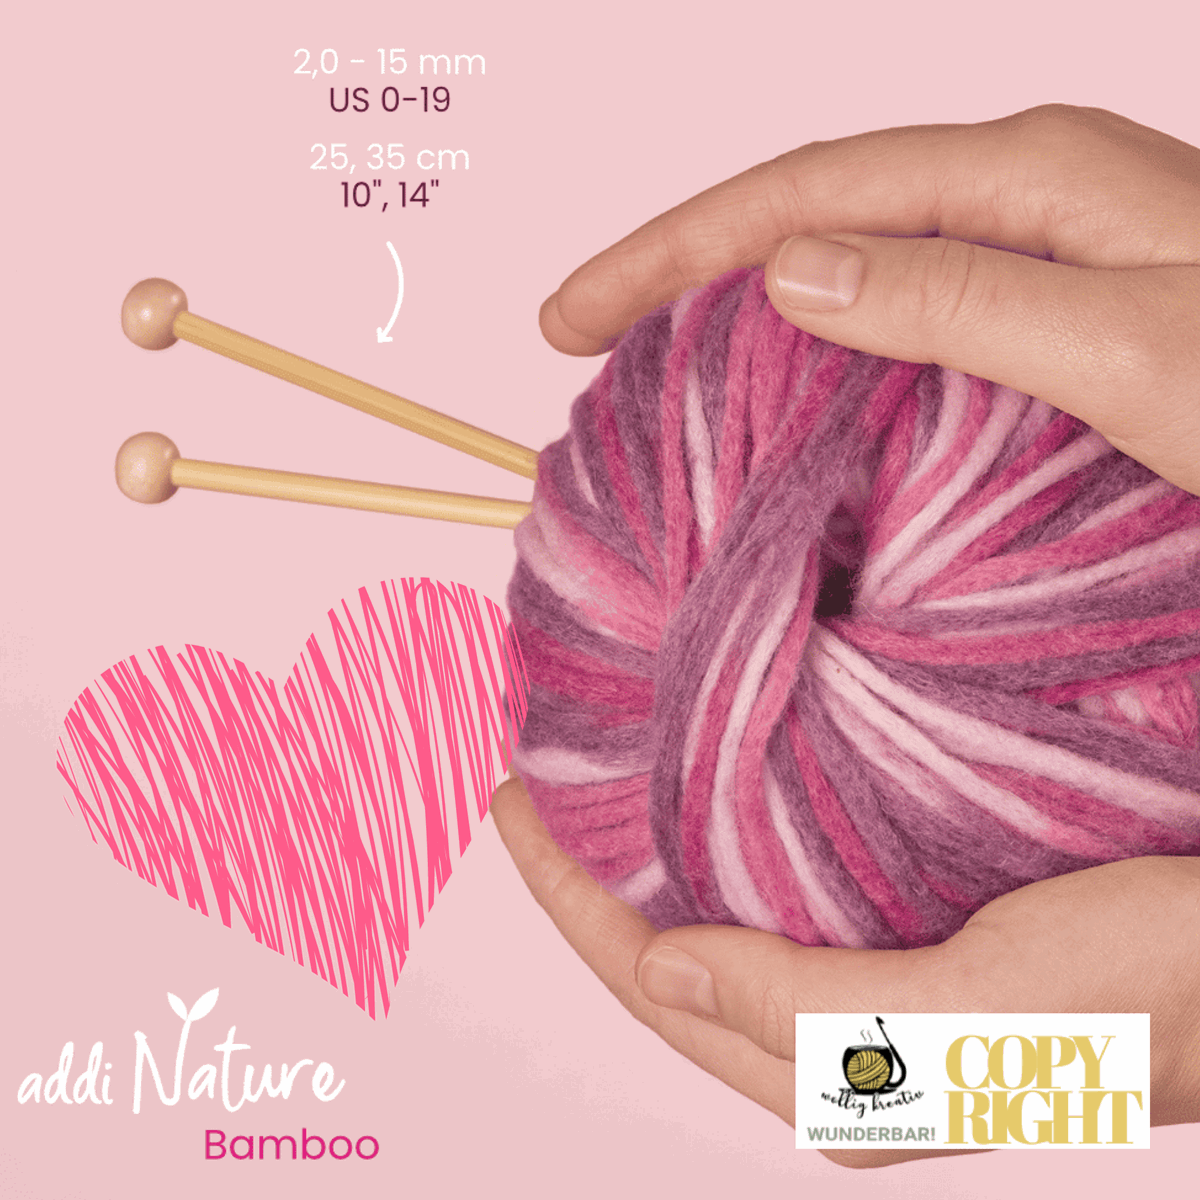 Addi, Nature Bamboo jacket knitting needle, 65007, size 12, length 25